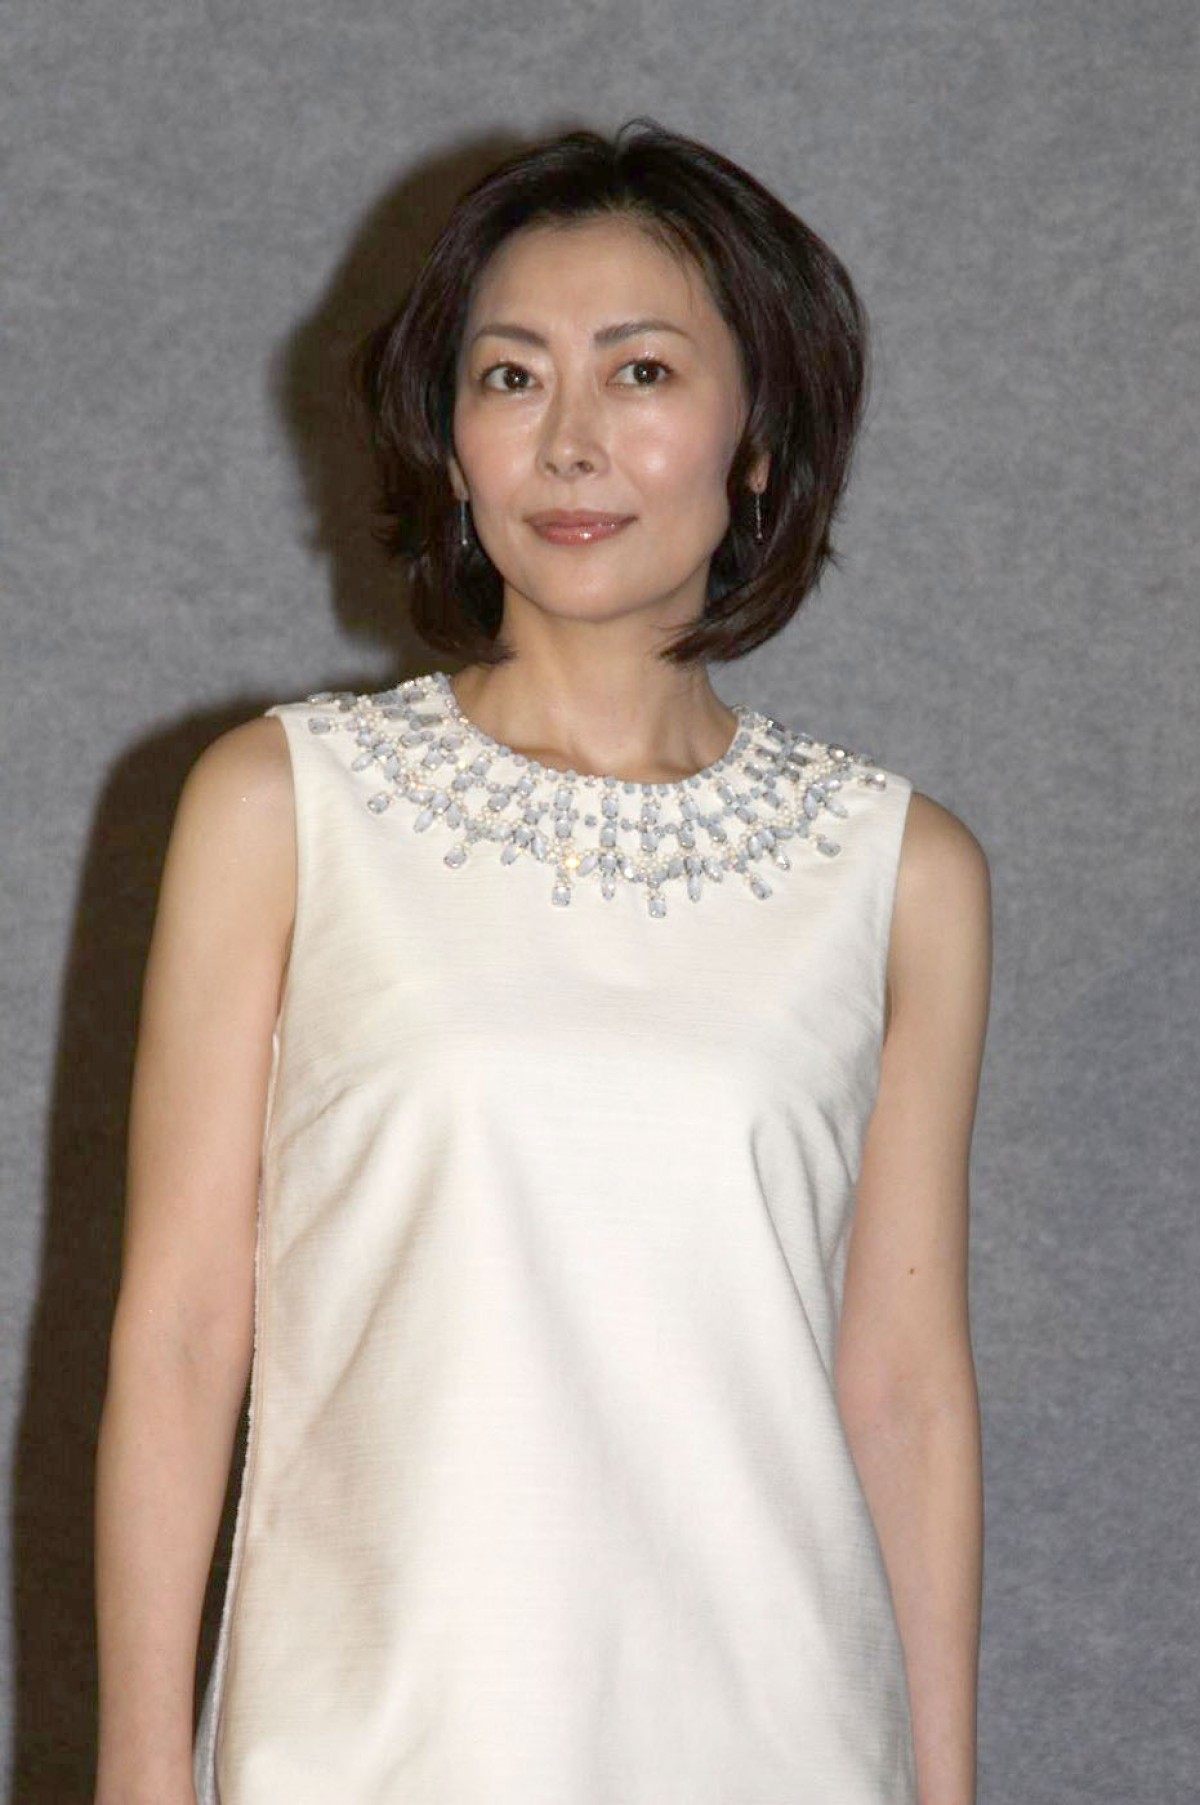 中山美穂は「No.1の女優」、堂本剛は「輝きを持っている」 野島伸司が絶賛